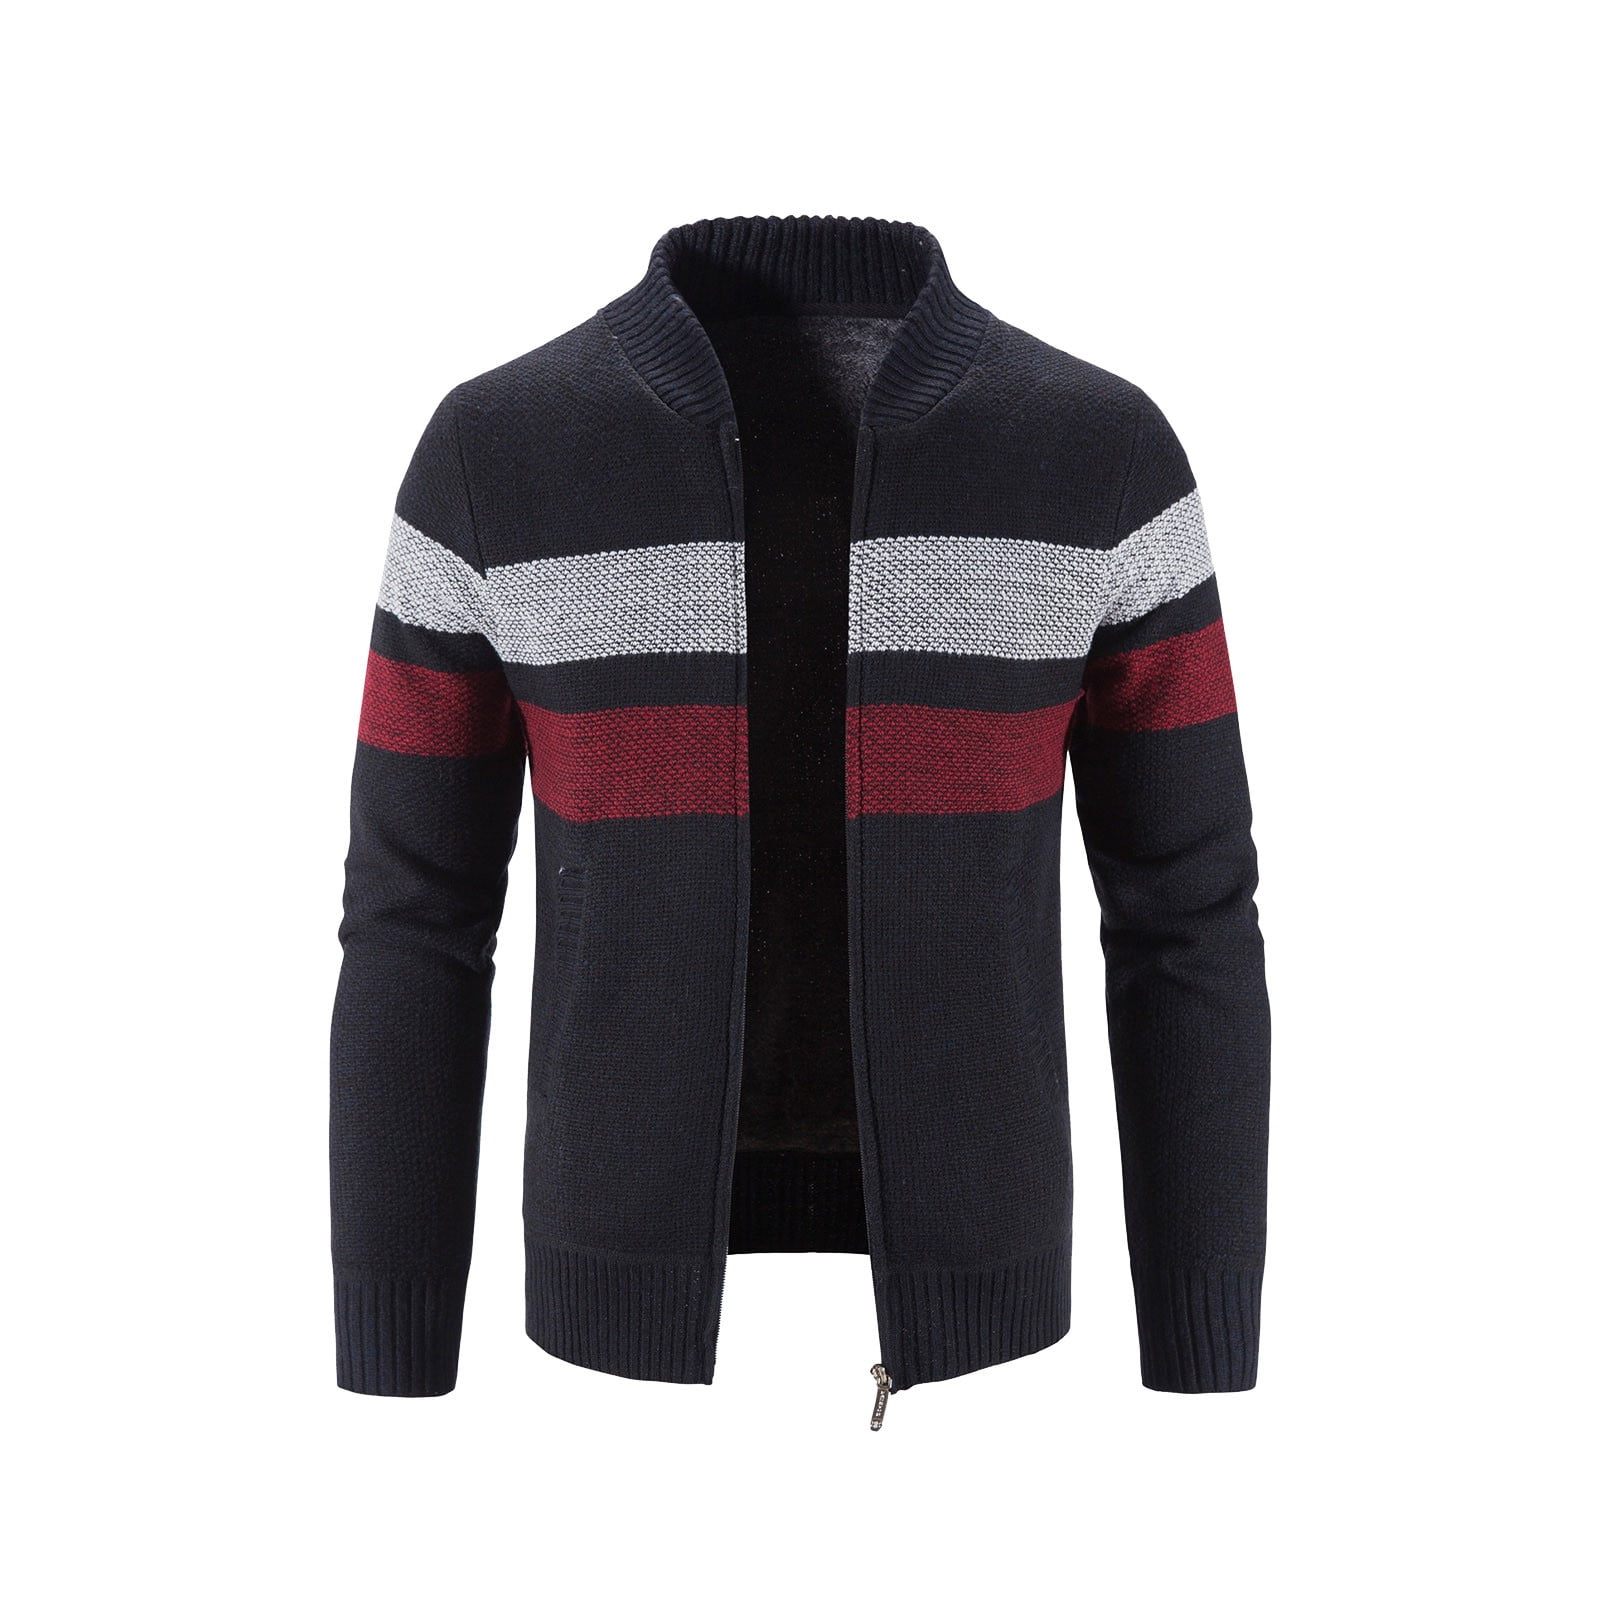 YWDJ Cardigan Sweaters for Men Zipper Winter Turtleneck Zipper Long ...